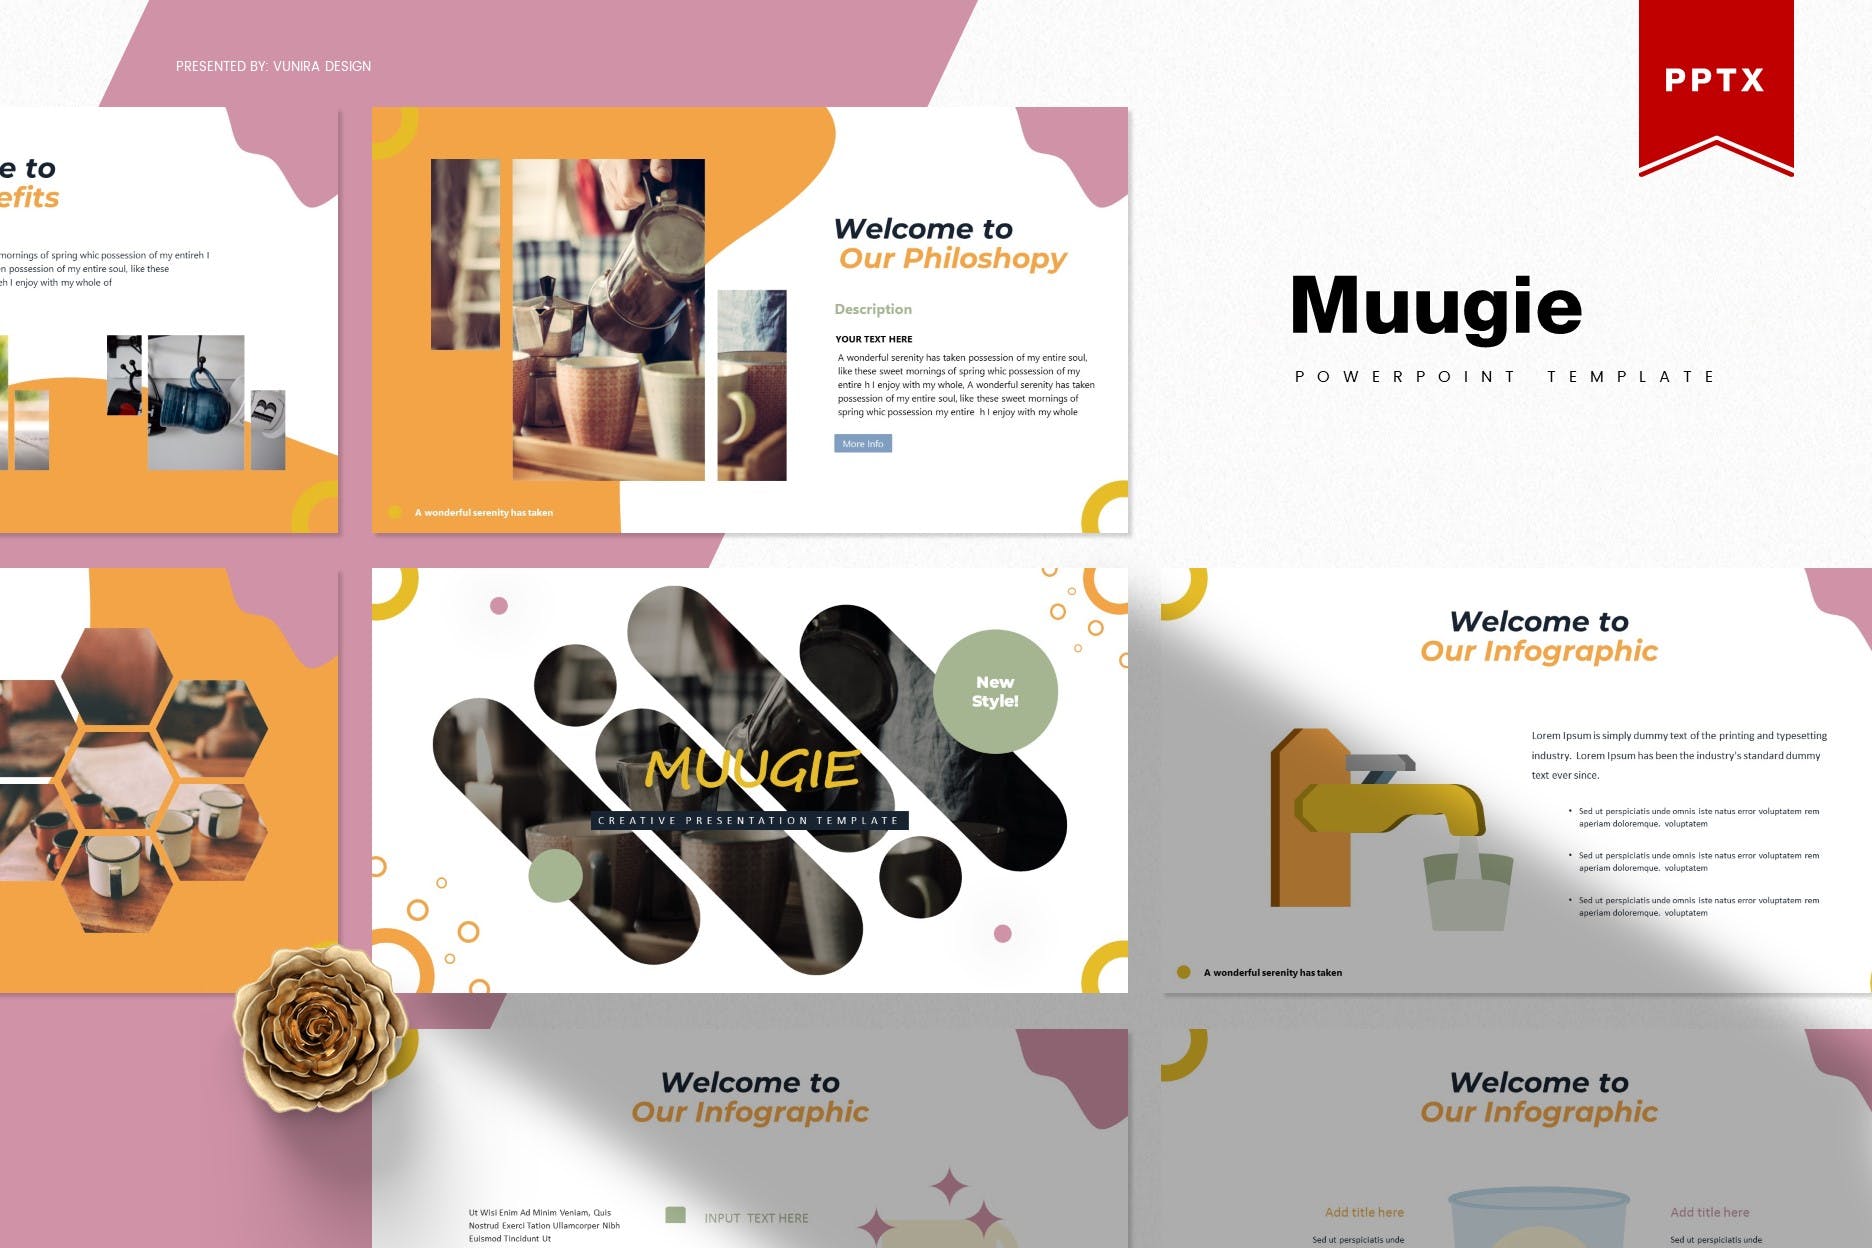 咖啡/咖啡厅品牌宣传&咖啡培训课程PPT幻灯片模板 Muugie | Powerpoint Template插图